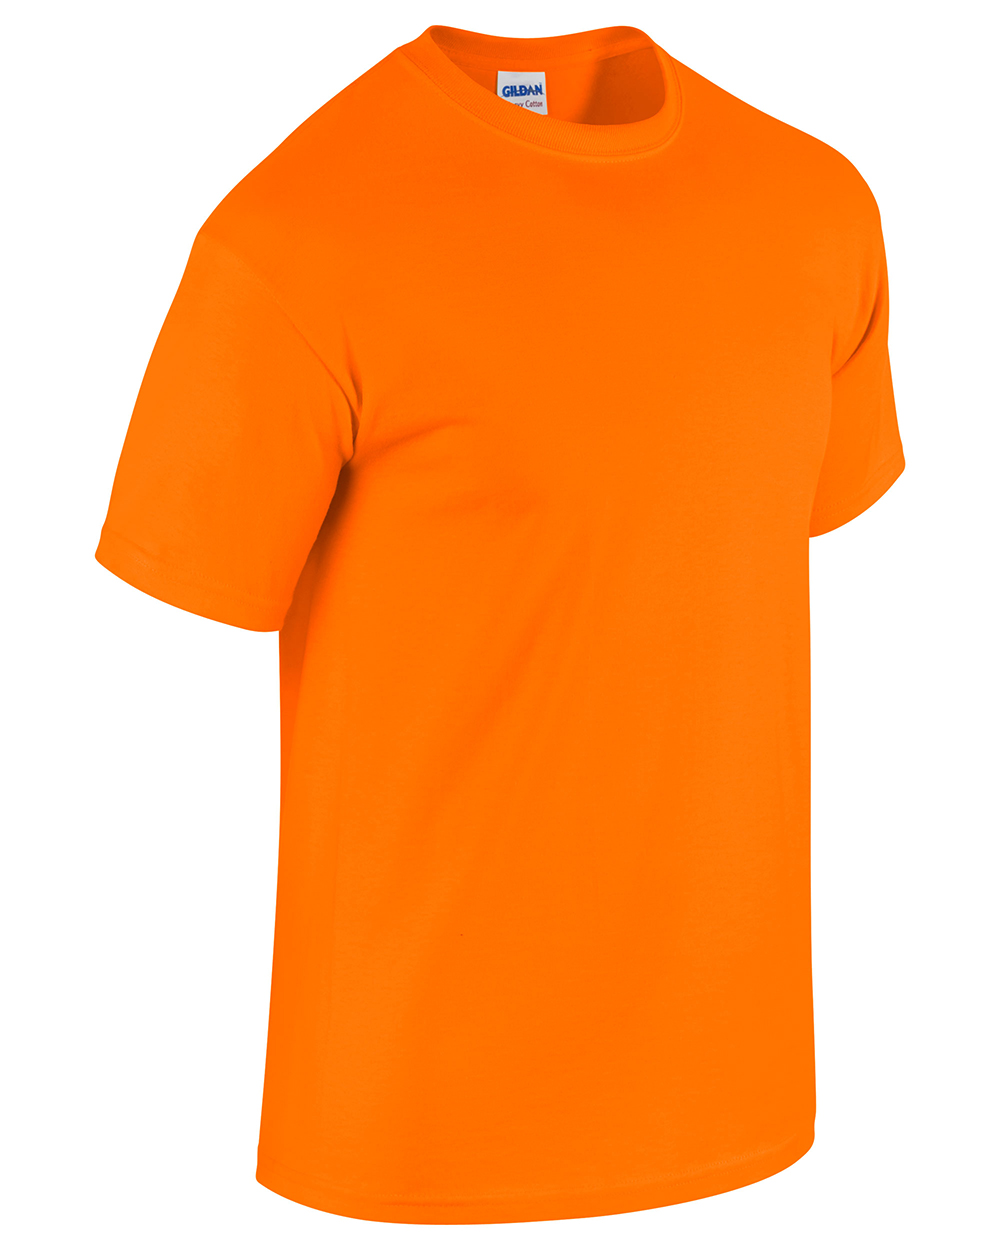 Gildan 5000 Safety Orange